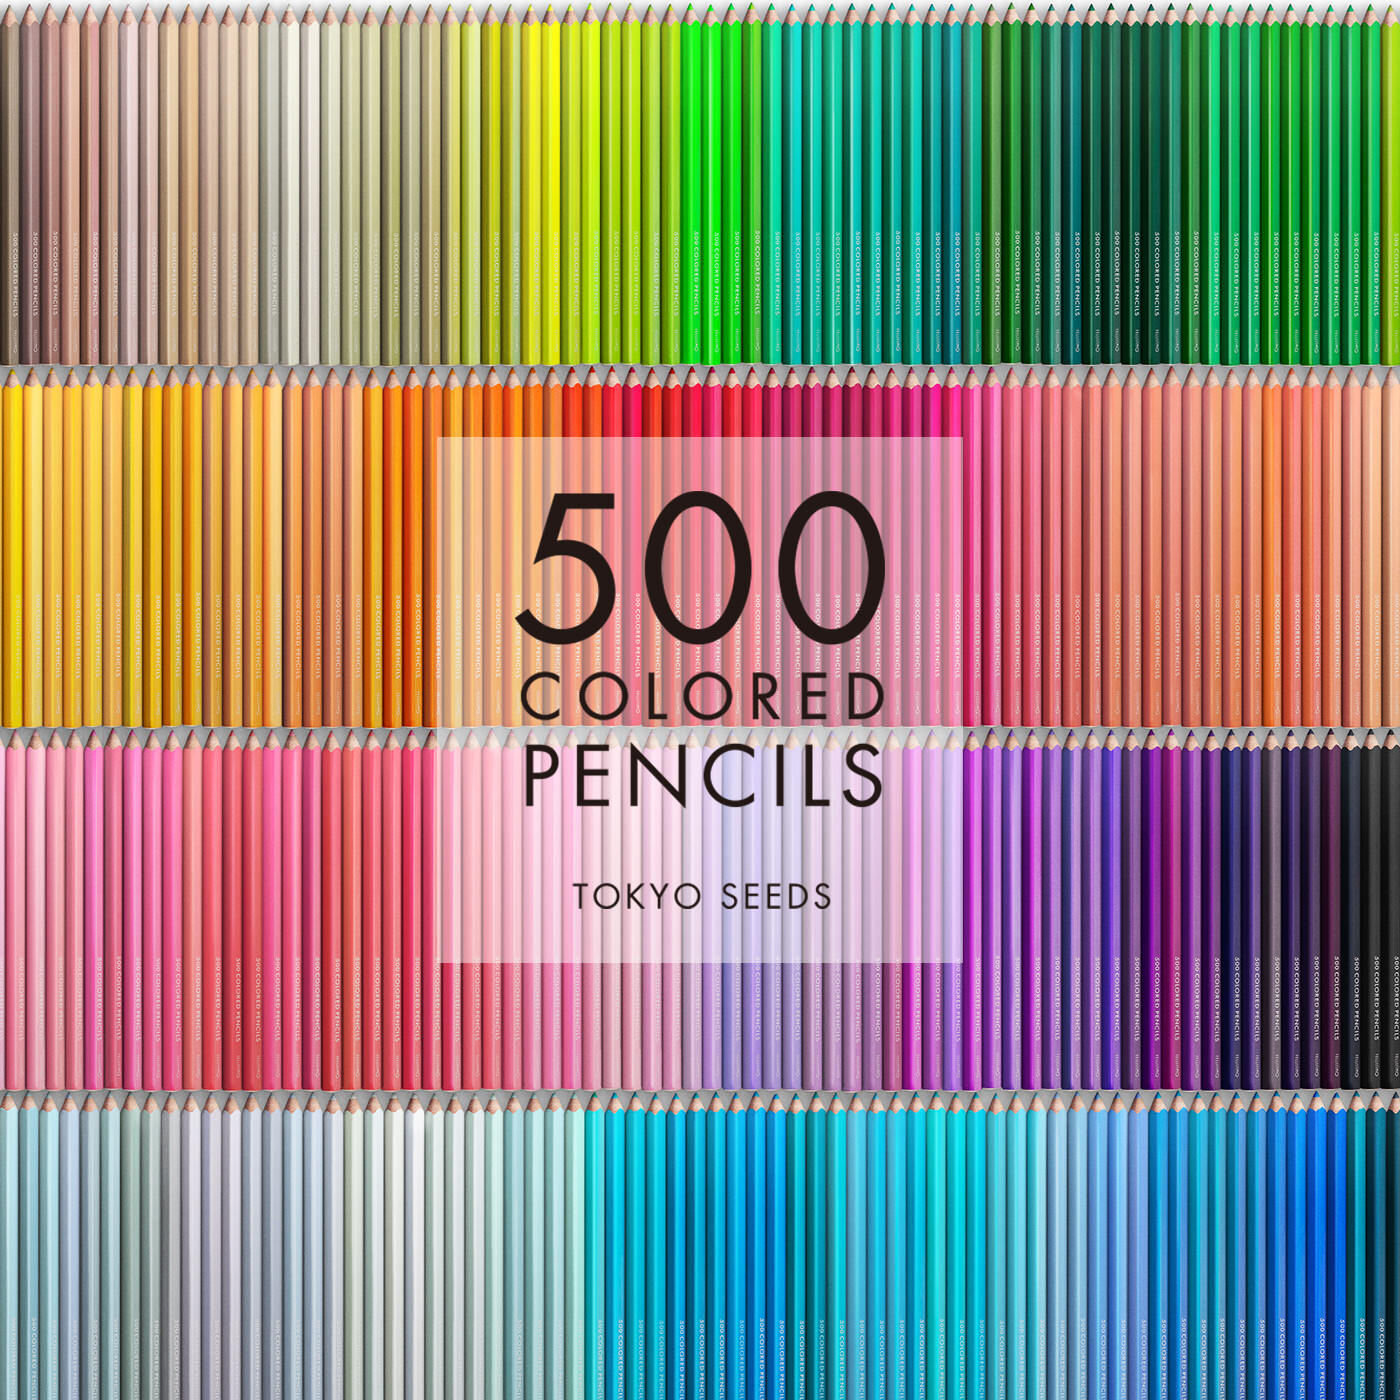 Real Stock|【45/500 SUNSHINE SWIMS】500色の色えんぴつ TOKYO SEEDS|1992年、世界初の「500色」という膨大な色数の色えんぴつが誕生して以来、その販売数は発売当初から合わせると、世界55ヵ国10万セット以上。今回、メイド・イン・ジャパンにこだわり、すべてが新しく生まれ変わって登場しました。